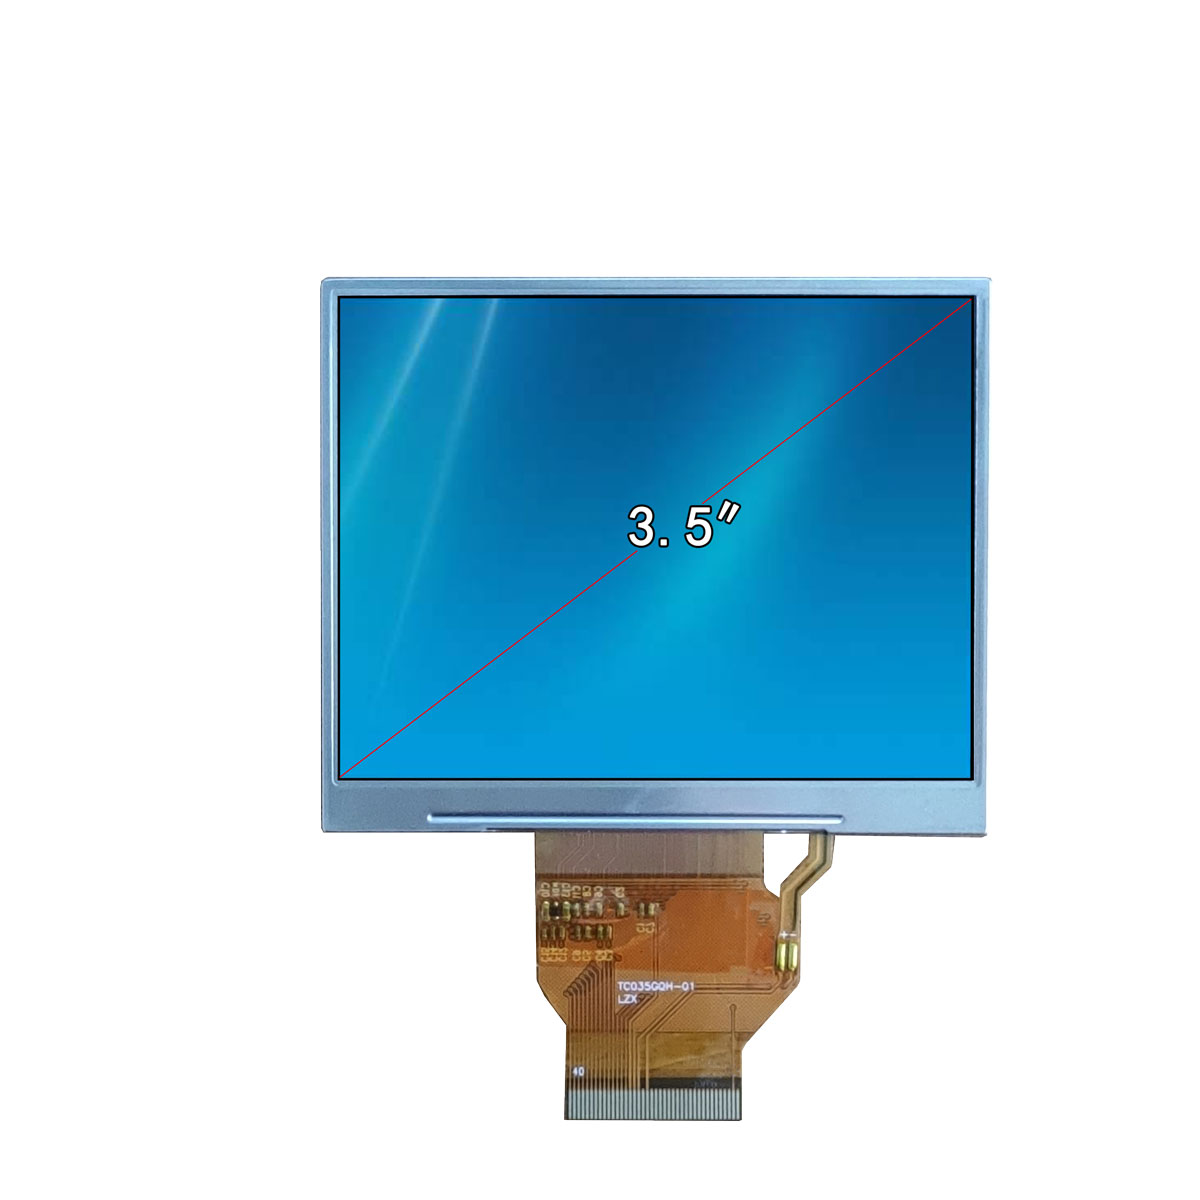 与TV和PC液晶屏相比，LCD液晶屏拥有更高的亮度